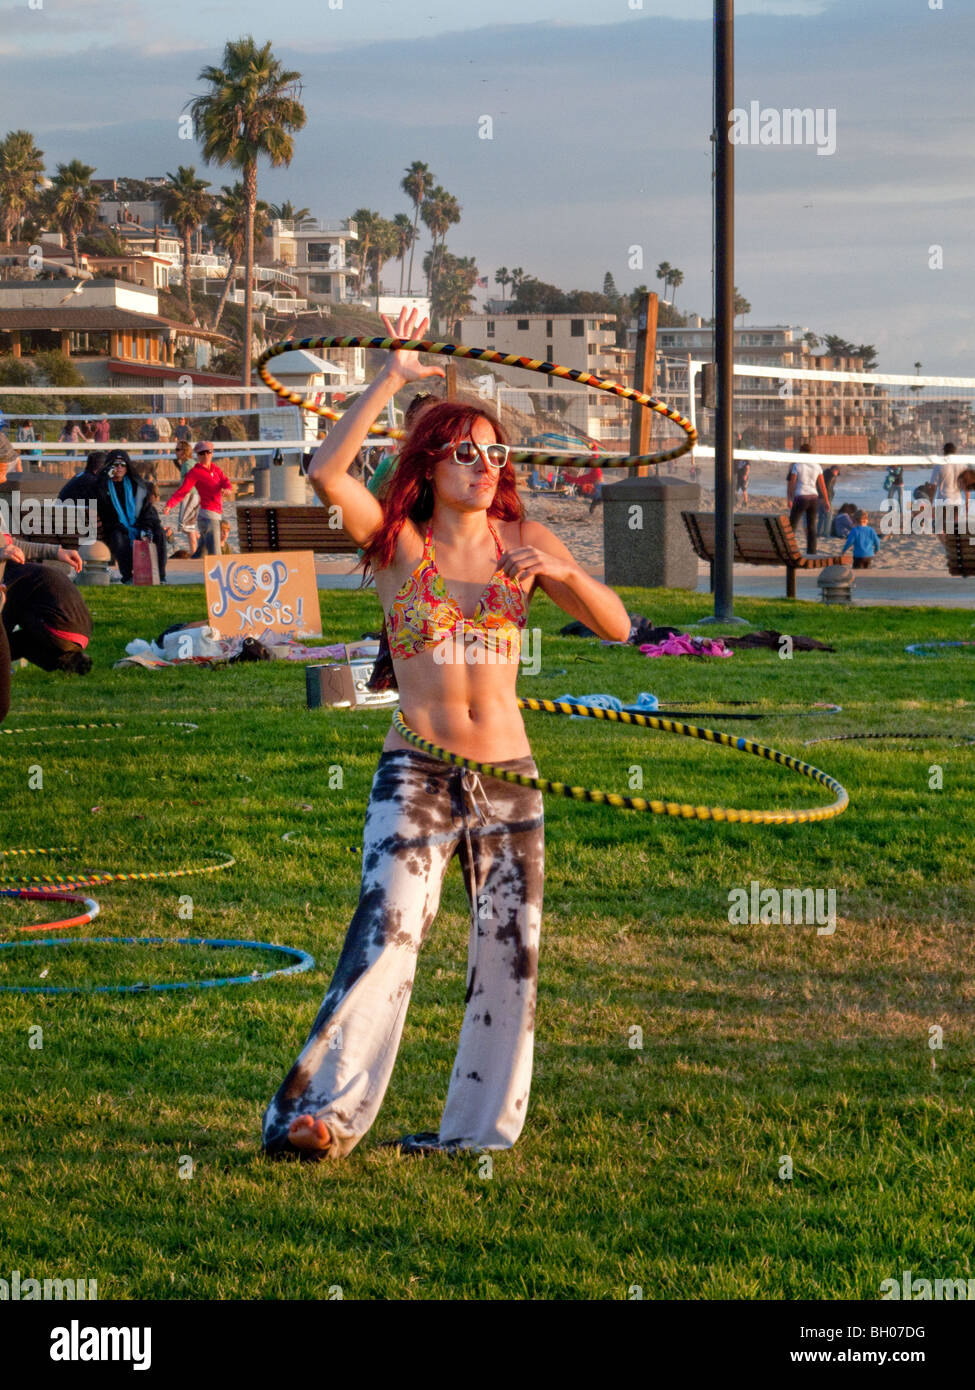 Un heureux hula hoop enthusiast se joint à une session' 'Hoopnosis en fin d'après-midi à Laguna Beach, CA. Remarque signe. Banque D'Images